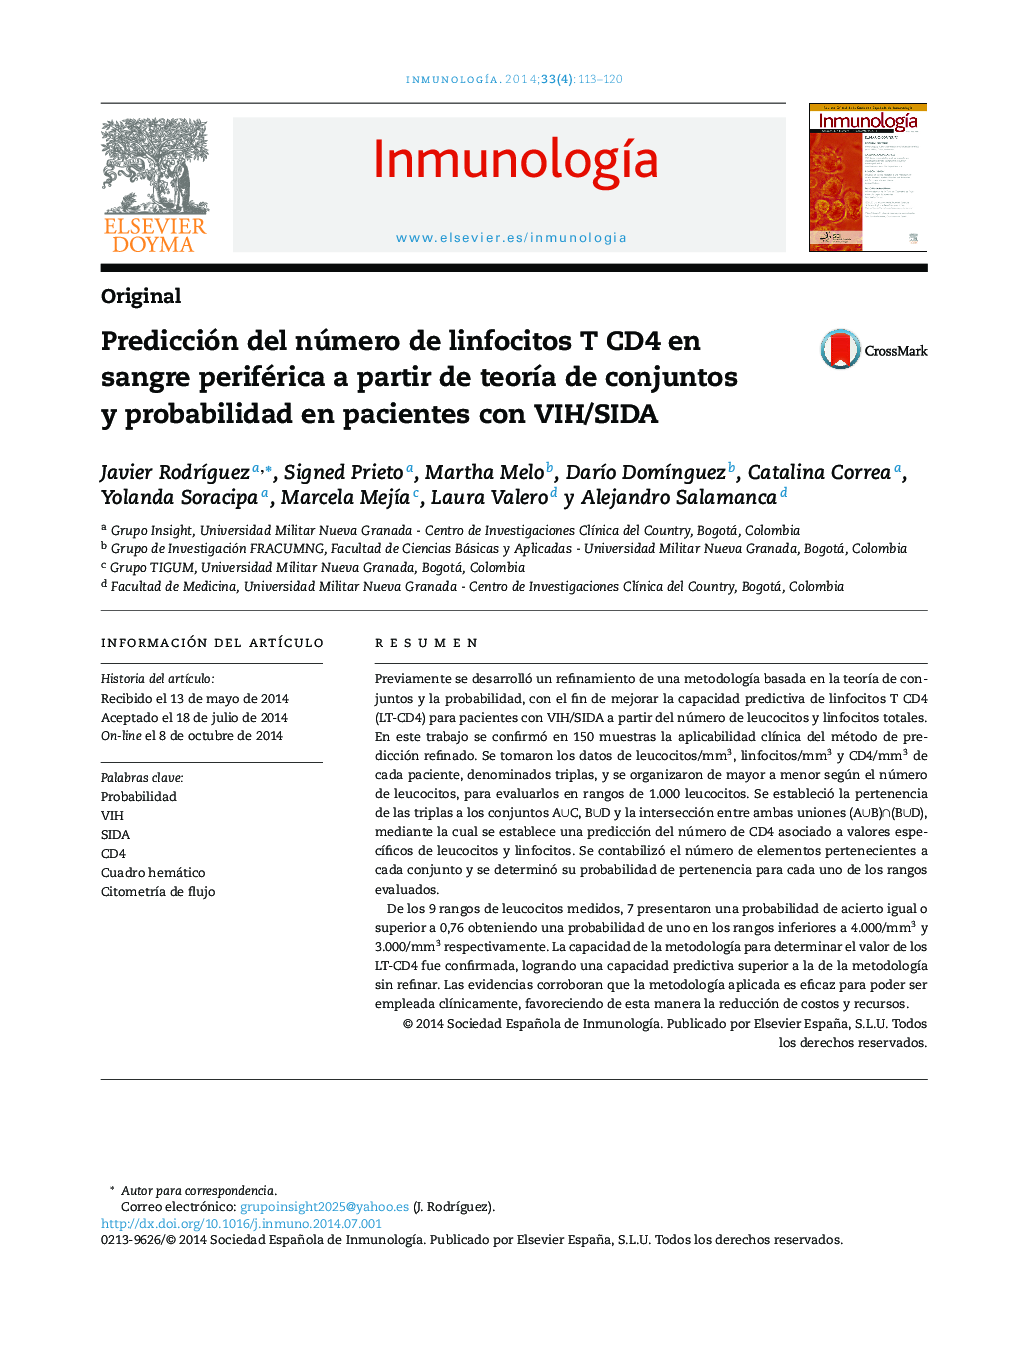 Predicción del número de linfocitos T CD4 en sangre periférica a partir de teoría de conjuntos y probabilidad en pacientes con VIH/SIDA